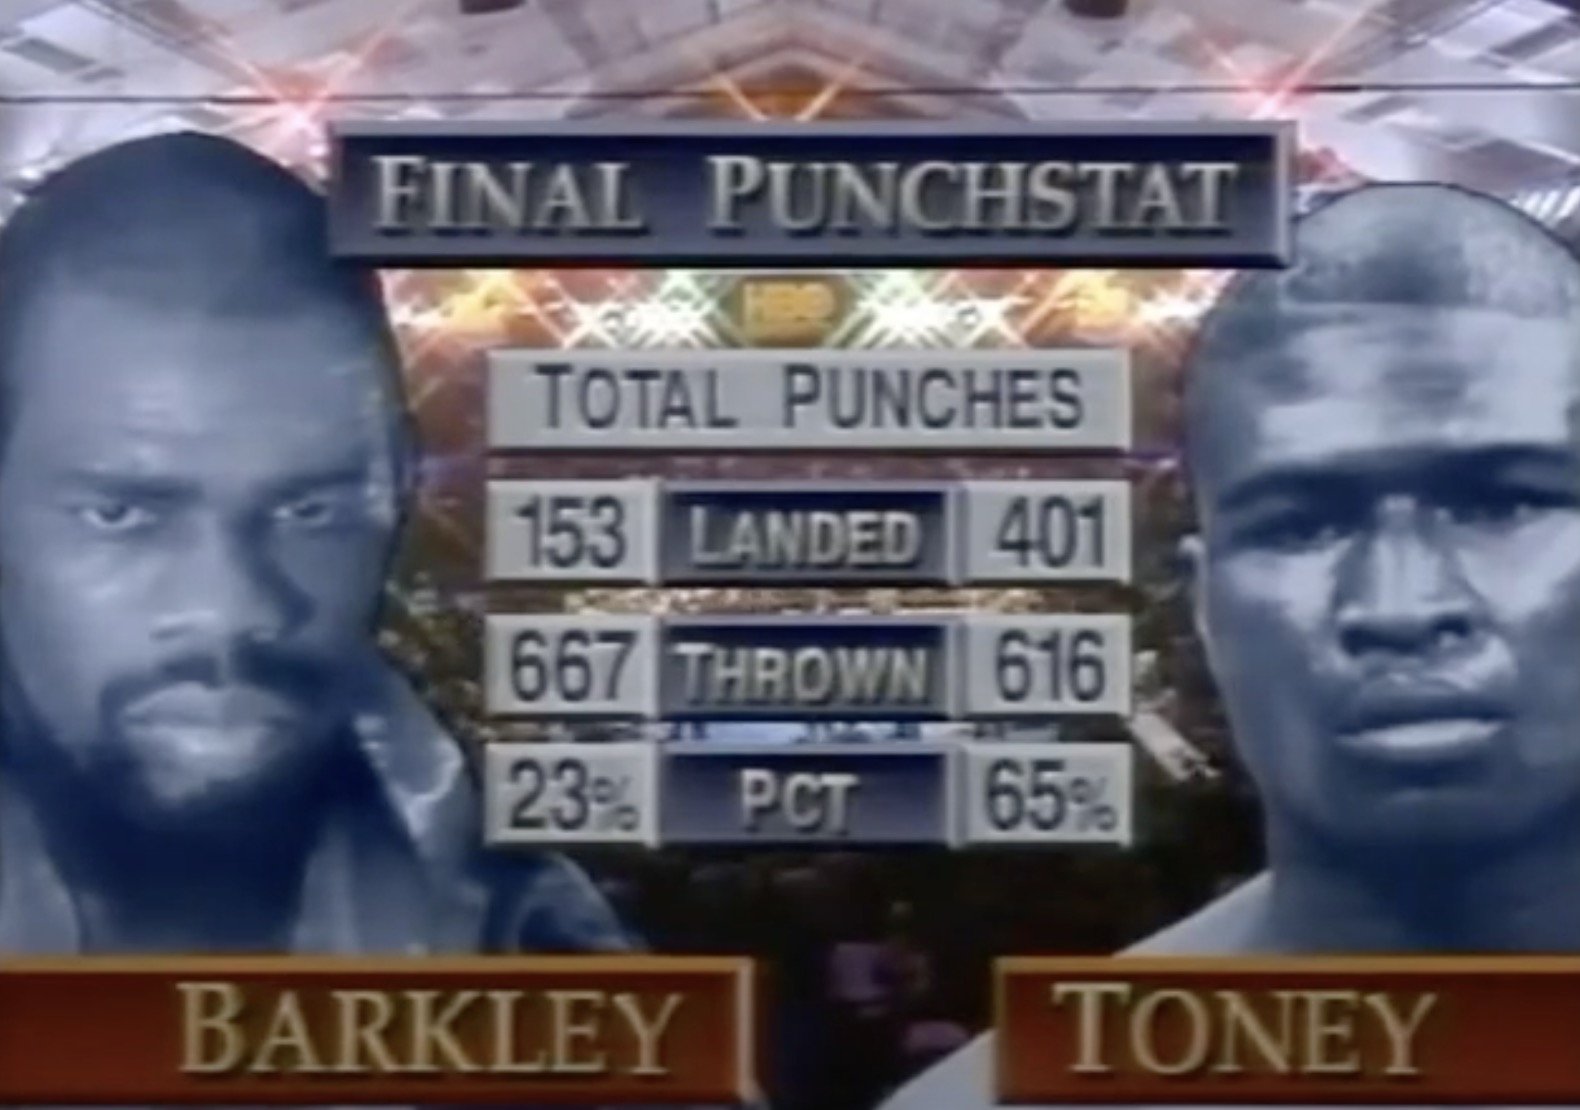 Iran Barkley, James Toney boxing image / photo